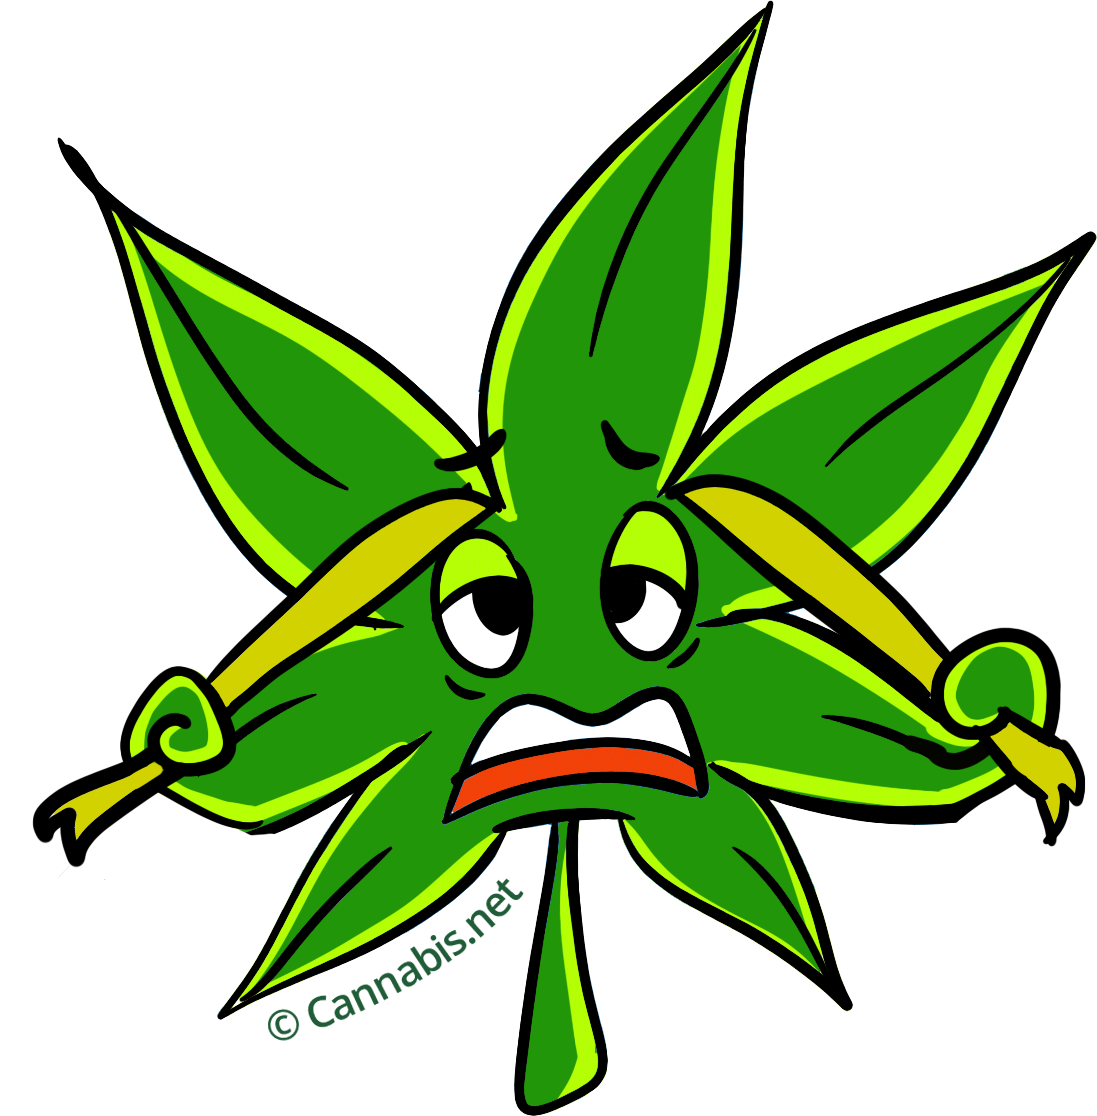 PURPLE KUSH Premium INDICA Hybrid Cannabis Strain